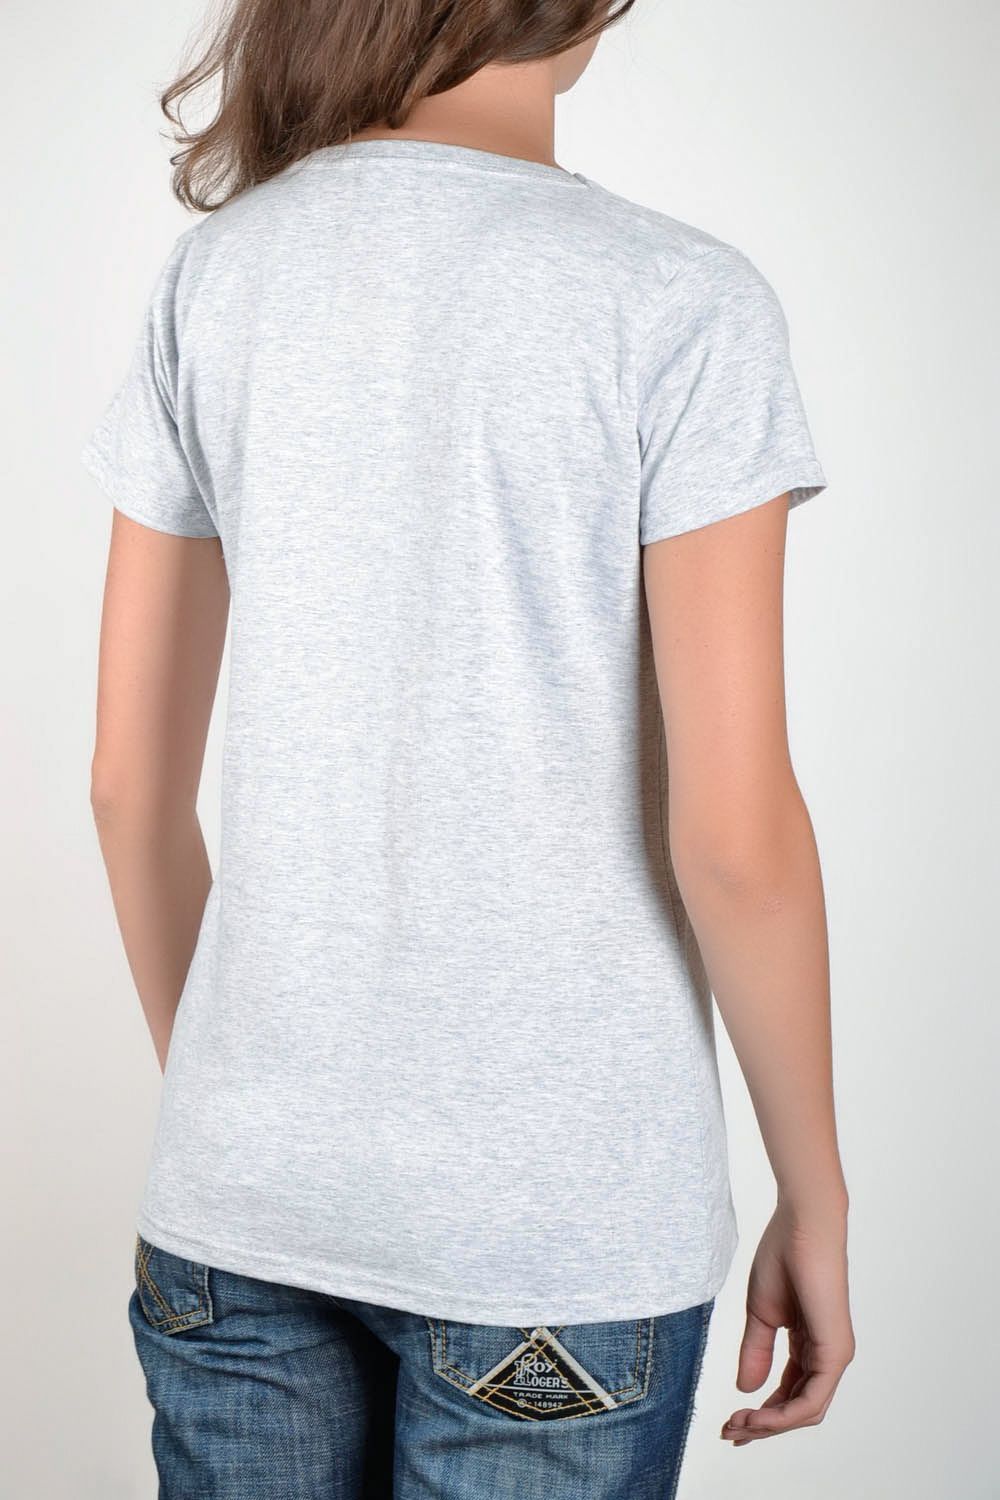 Camiseta de algodón para mujeres foto 4